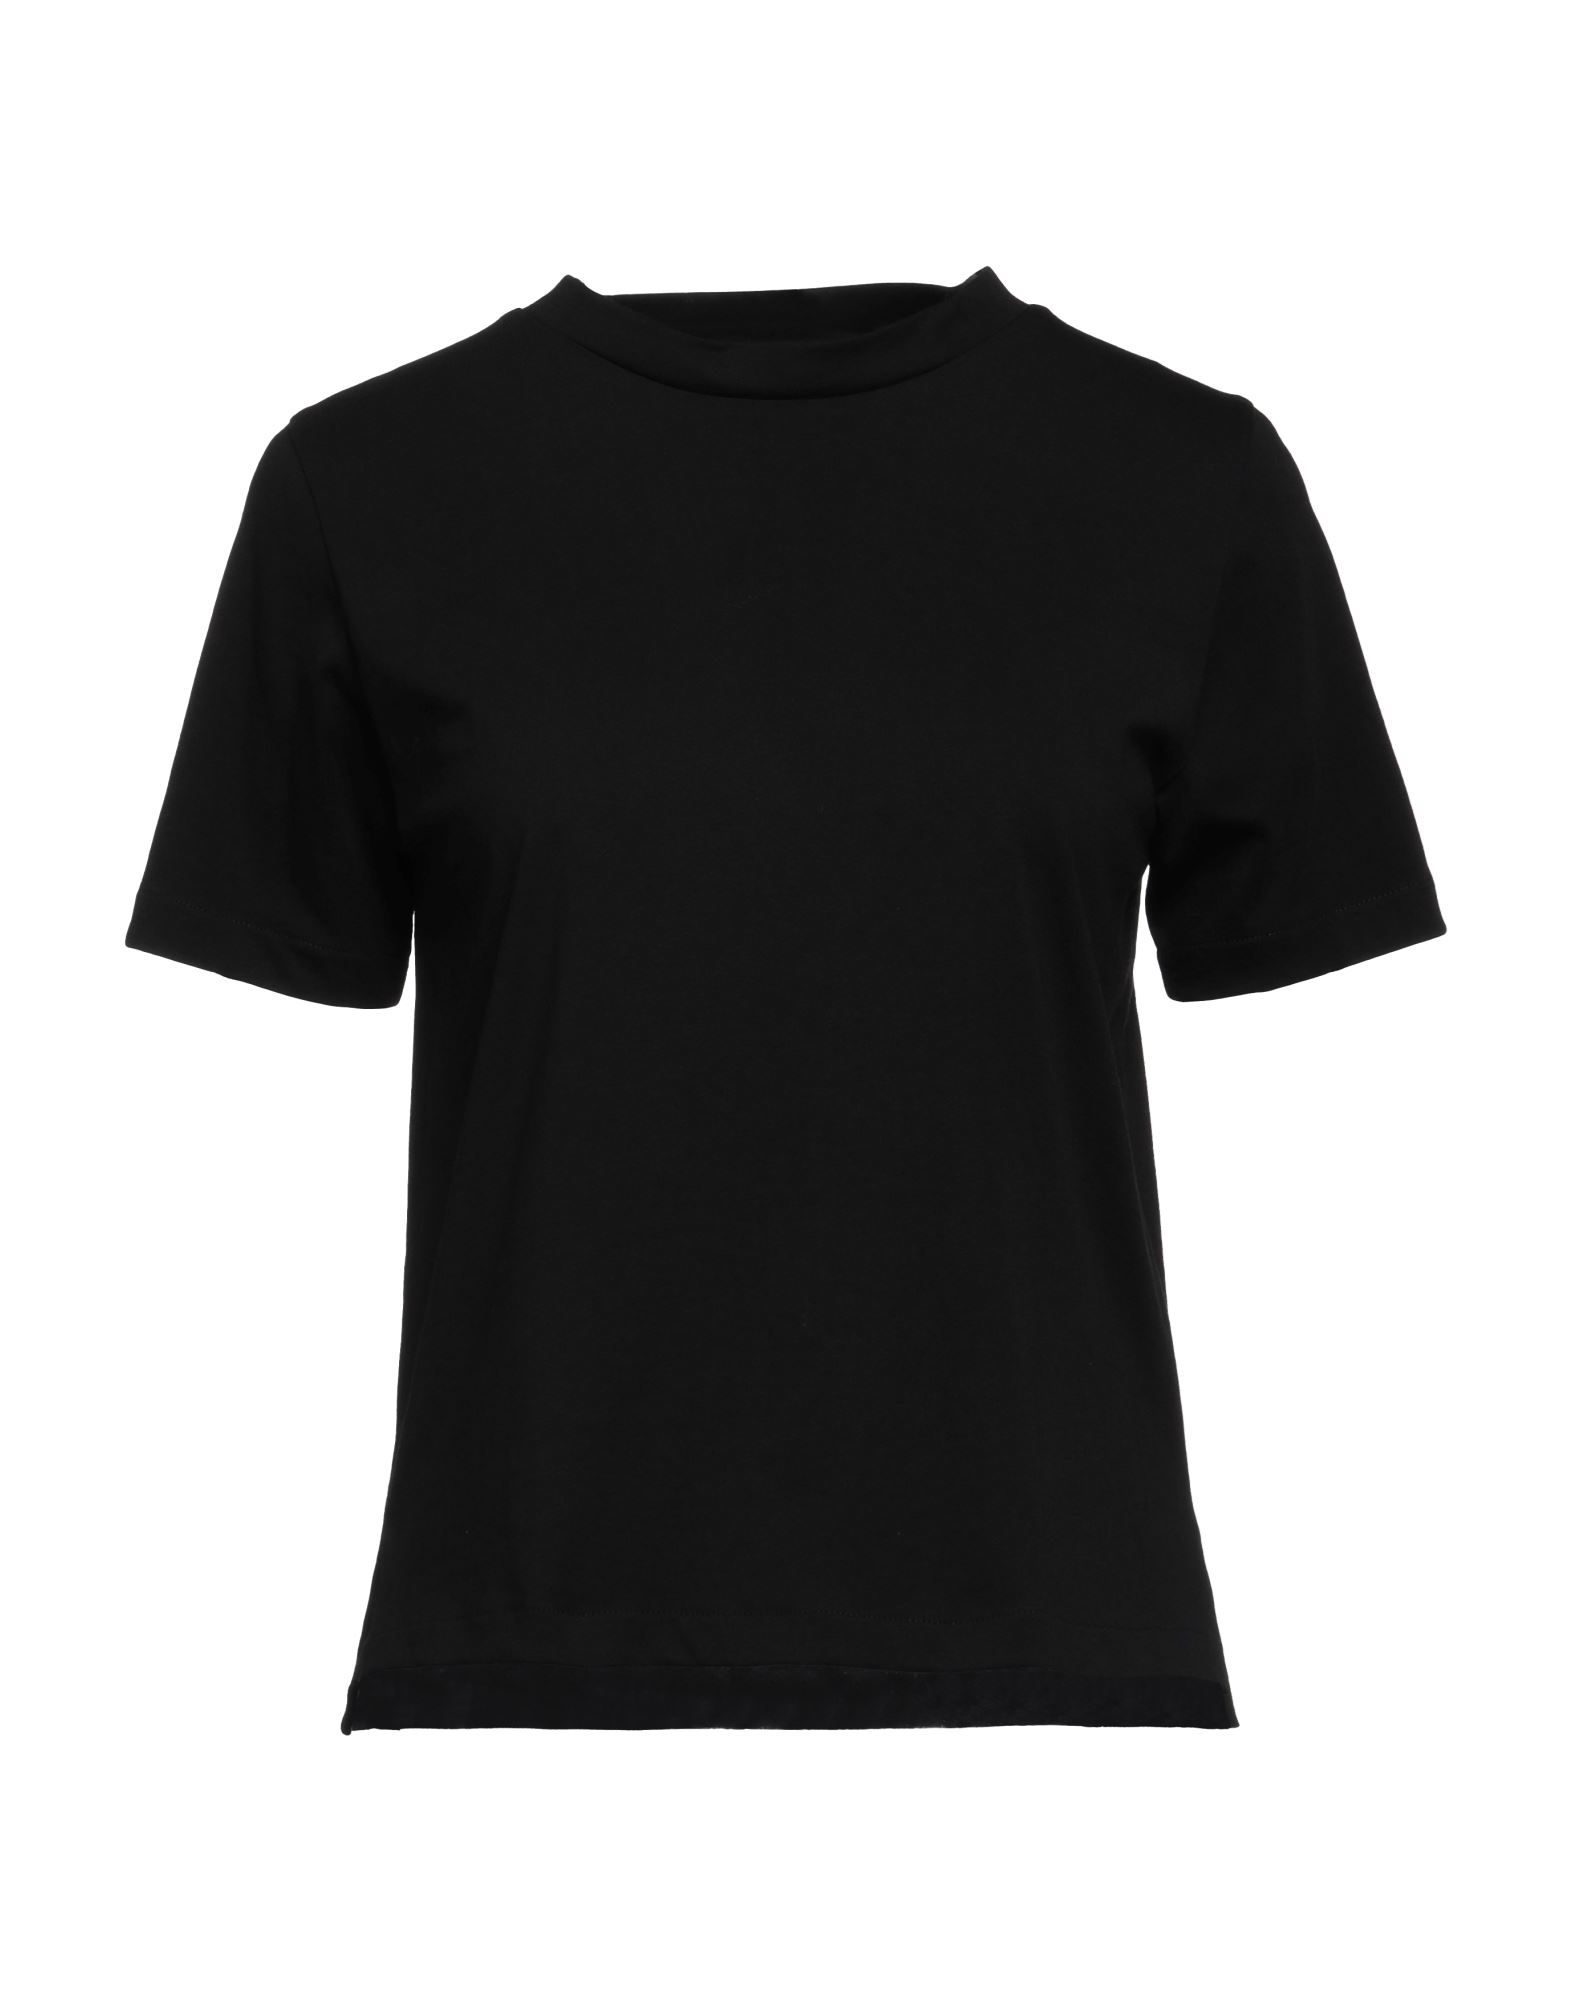 Aragona Woman T-shirt Black Size 2 Cotton